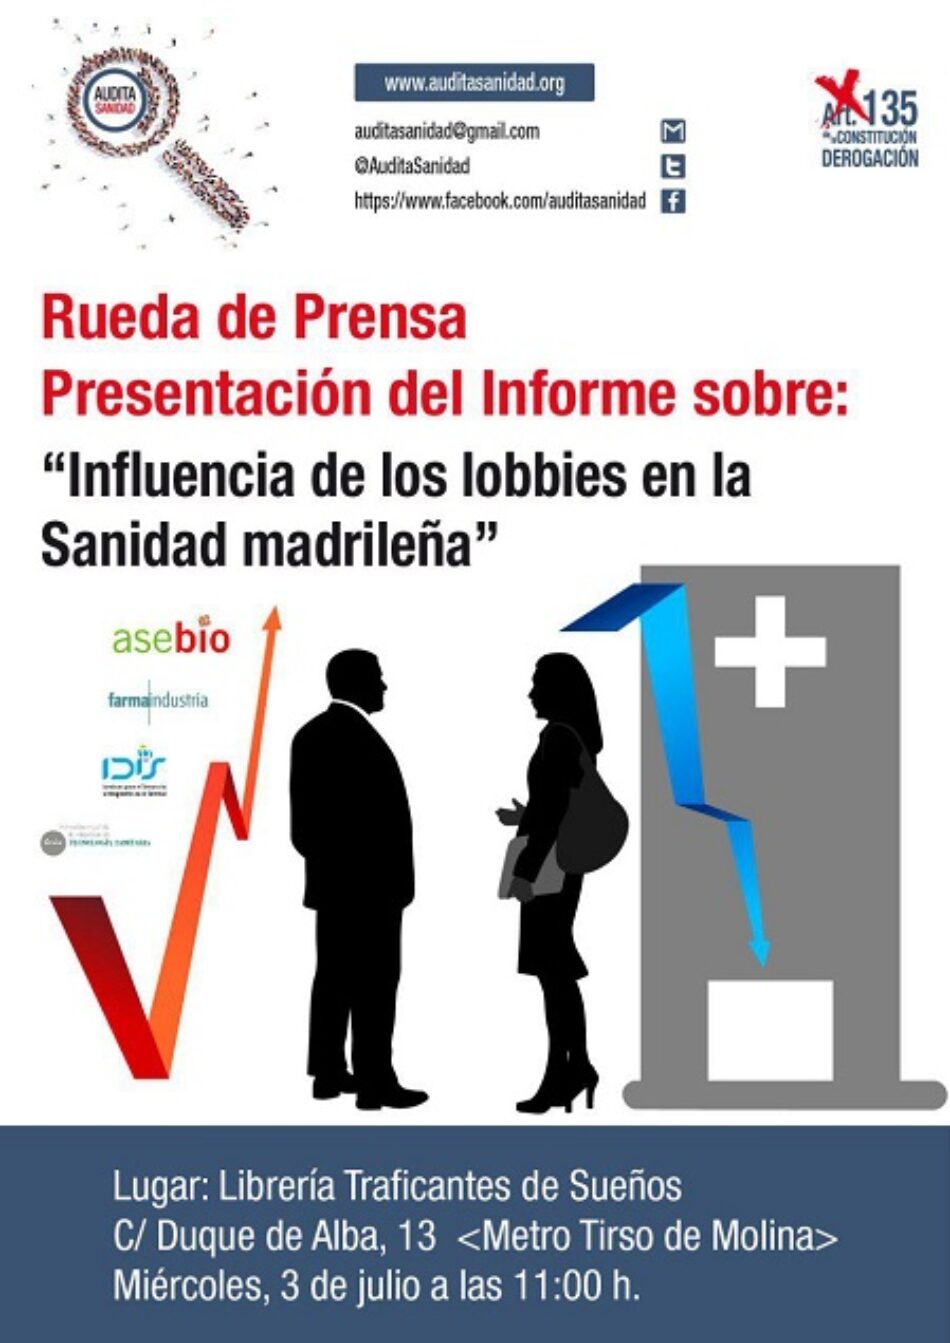 Audita Sanidad presenta su informe sobre la influencia de los lobbies en la sanidad madrileña